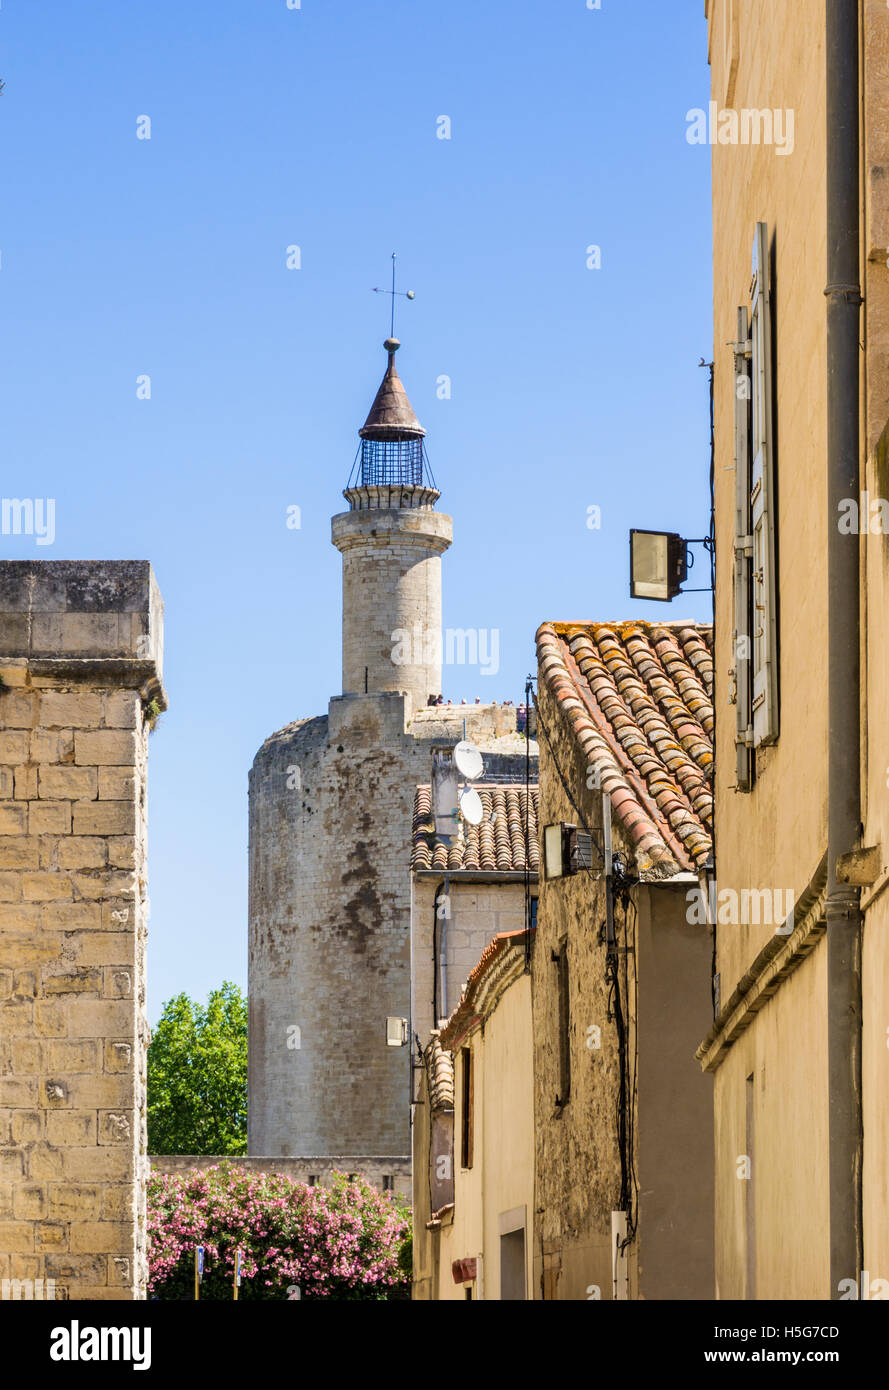 Vues à travers le village médiéval en direction de la Tour de Constance, Aigues Mortes, Nîmes, Gard, l'Occitanie, région de France Banque D'Images